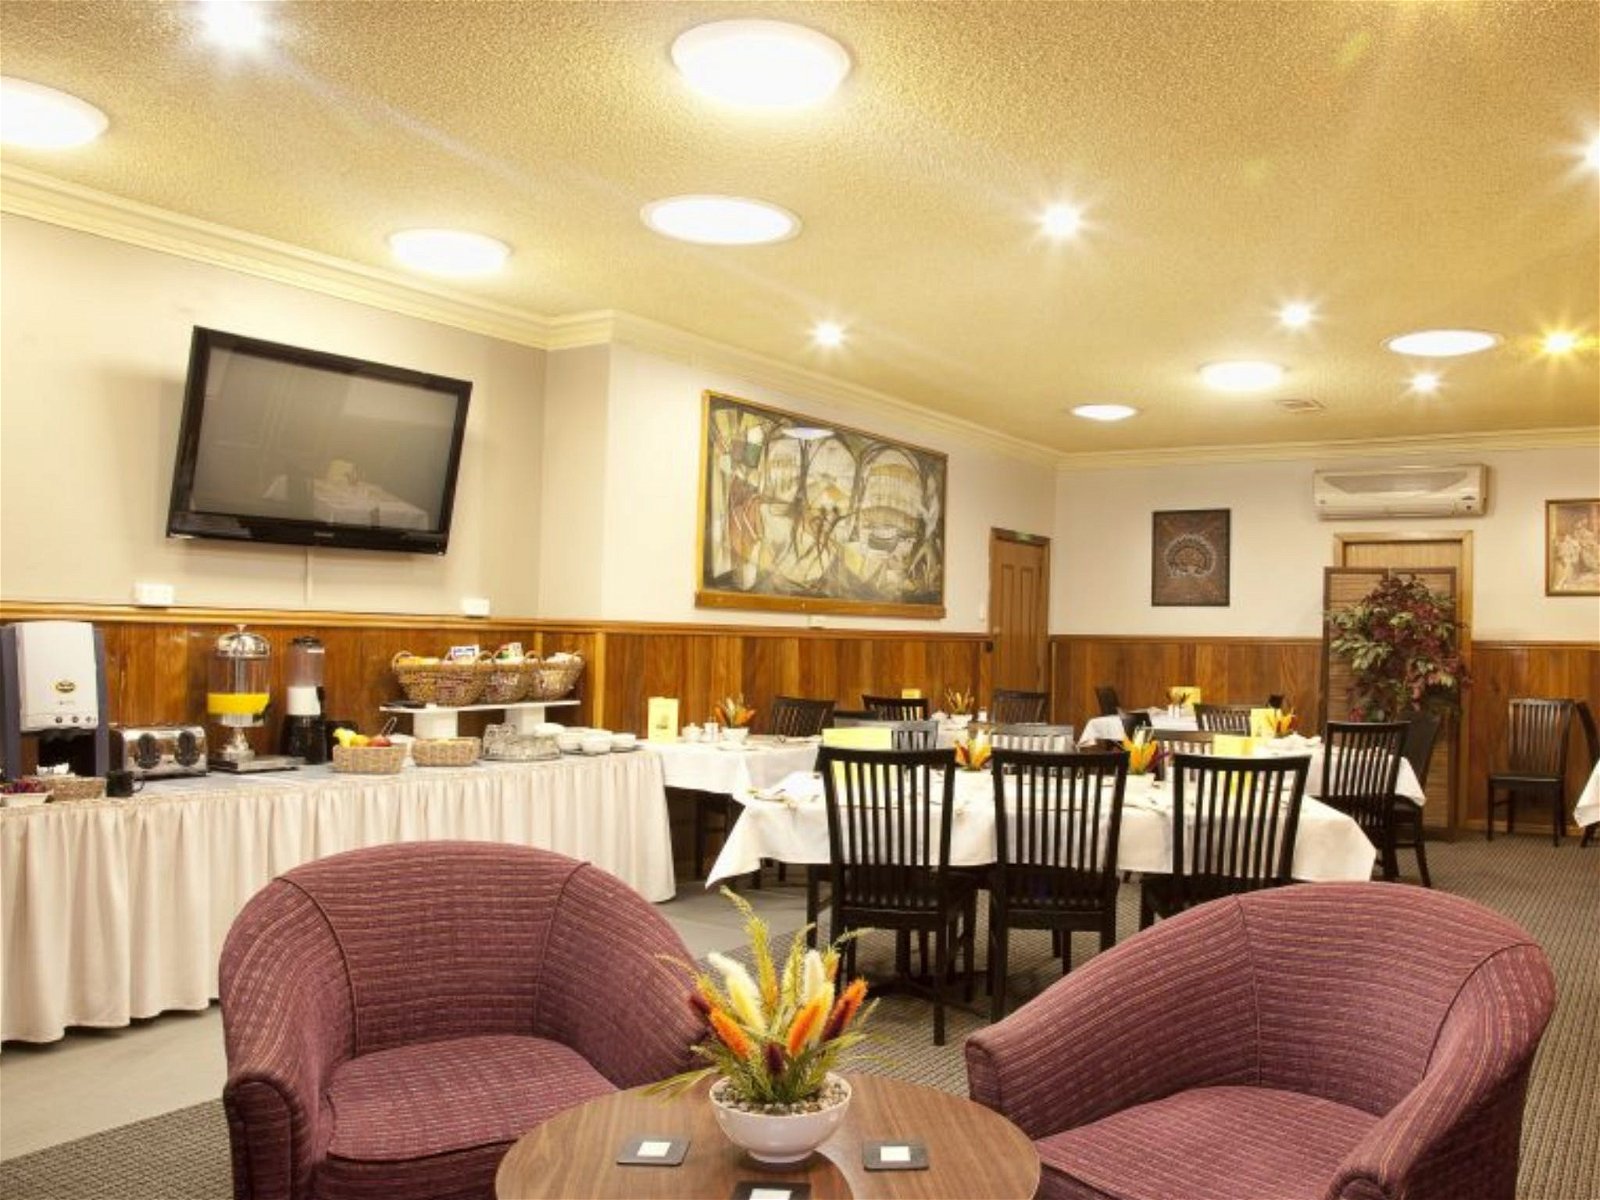 Endeavor Motel Restaurant - Australia Accommodation